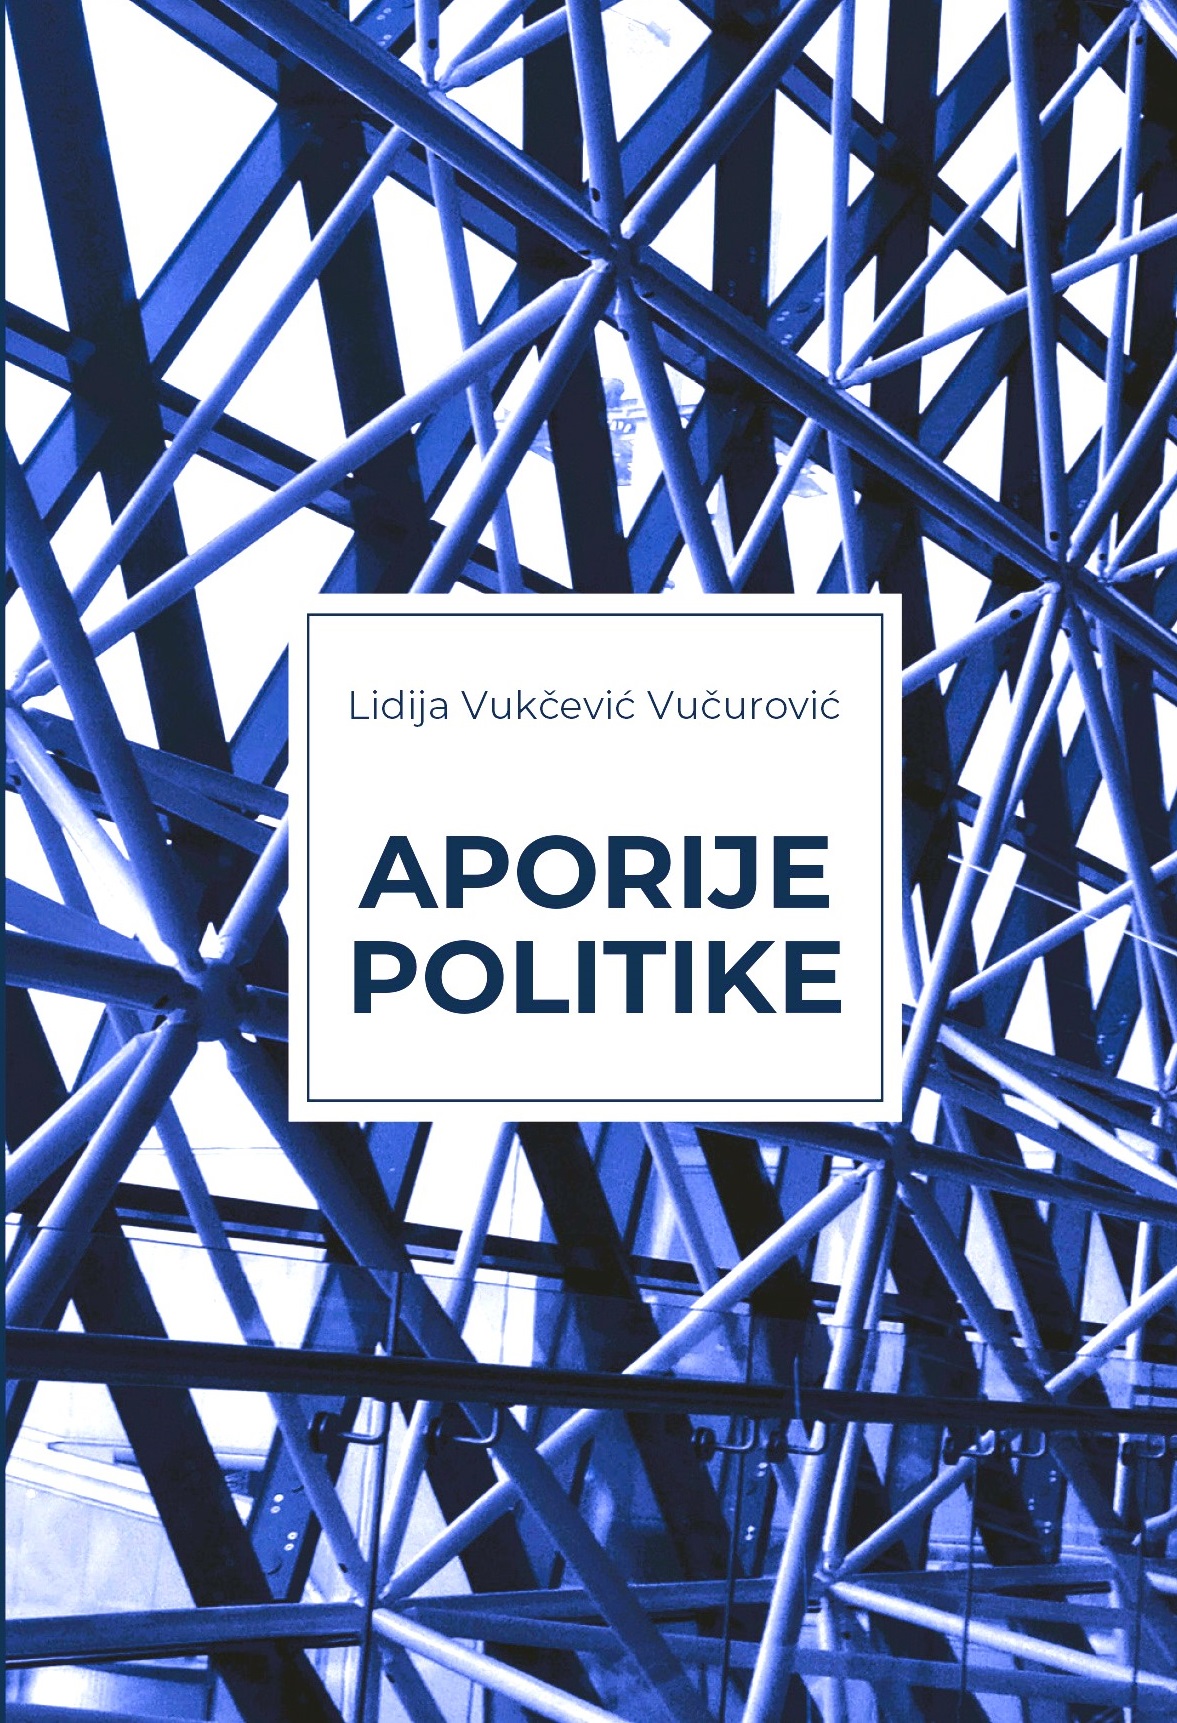 Promocija knjige “Aporije politike” autorke Lidije Vukčević Vučurović